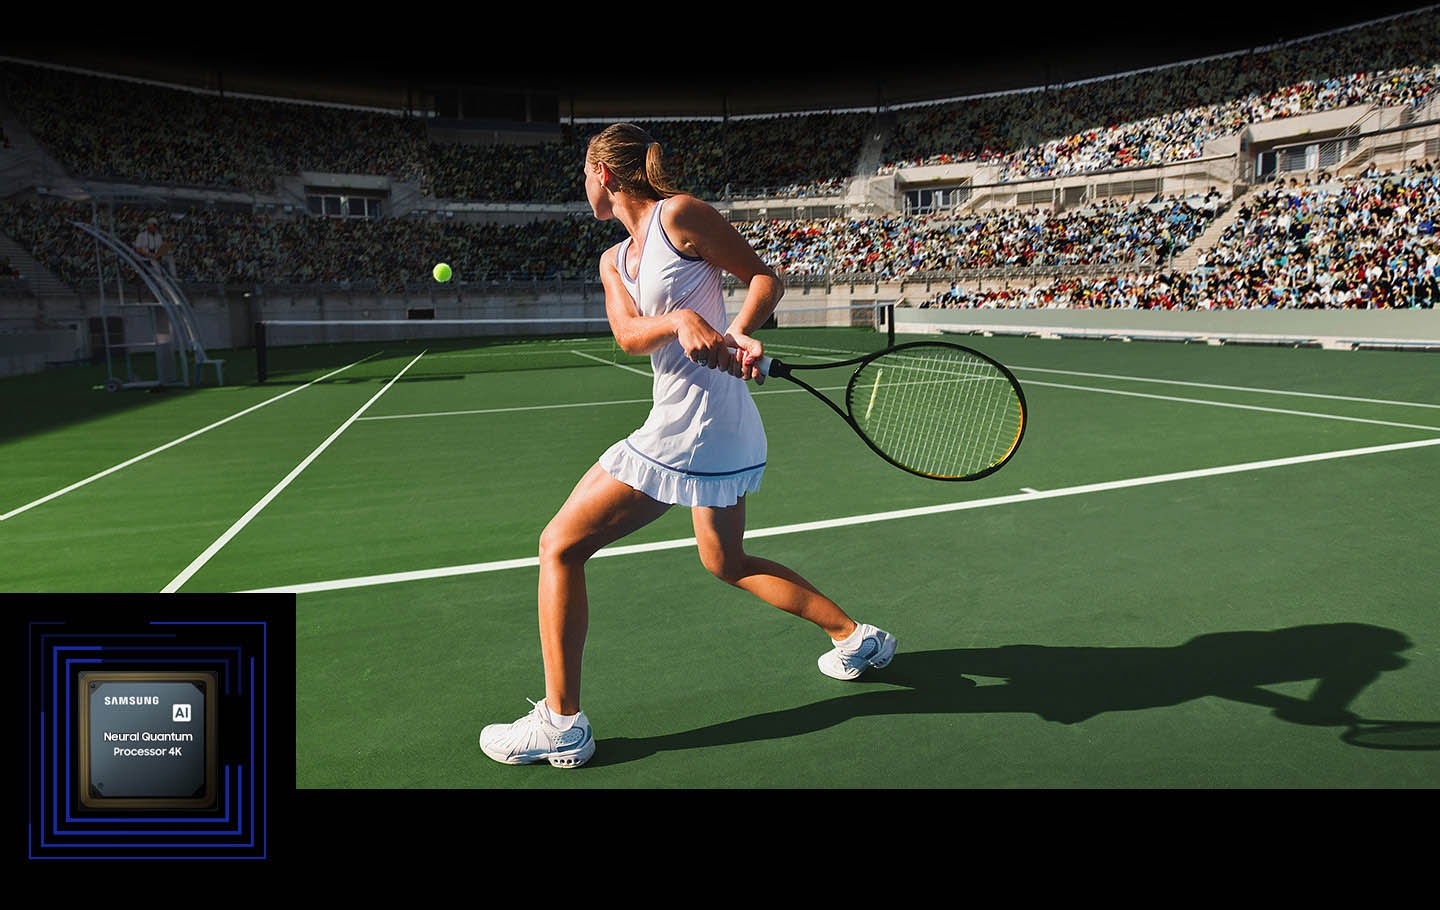 Жінка грає в теніс перед великим натовпом людей.  Neurónový quantum processor 4K обробляє кількість об'єктів на екрані та покращує всю сцену.  Neurónový quantum processor 4K відображається у нижньому лівому кутку.